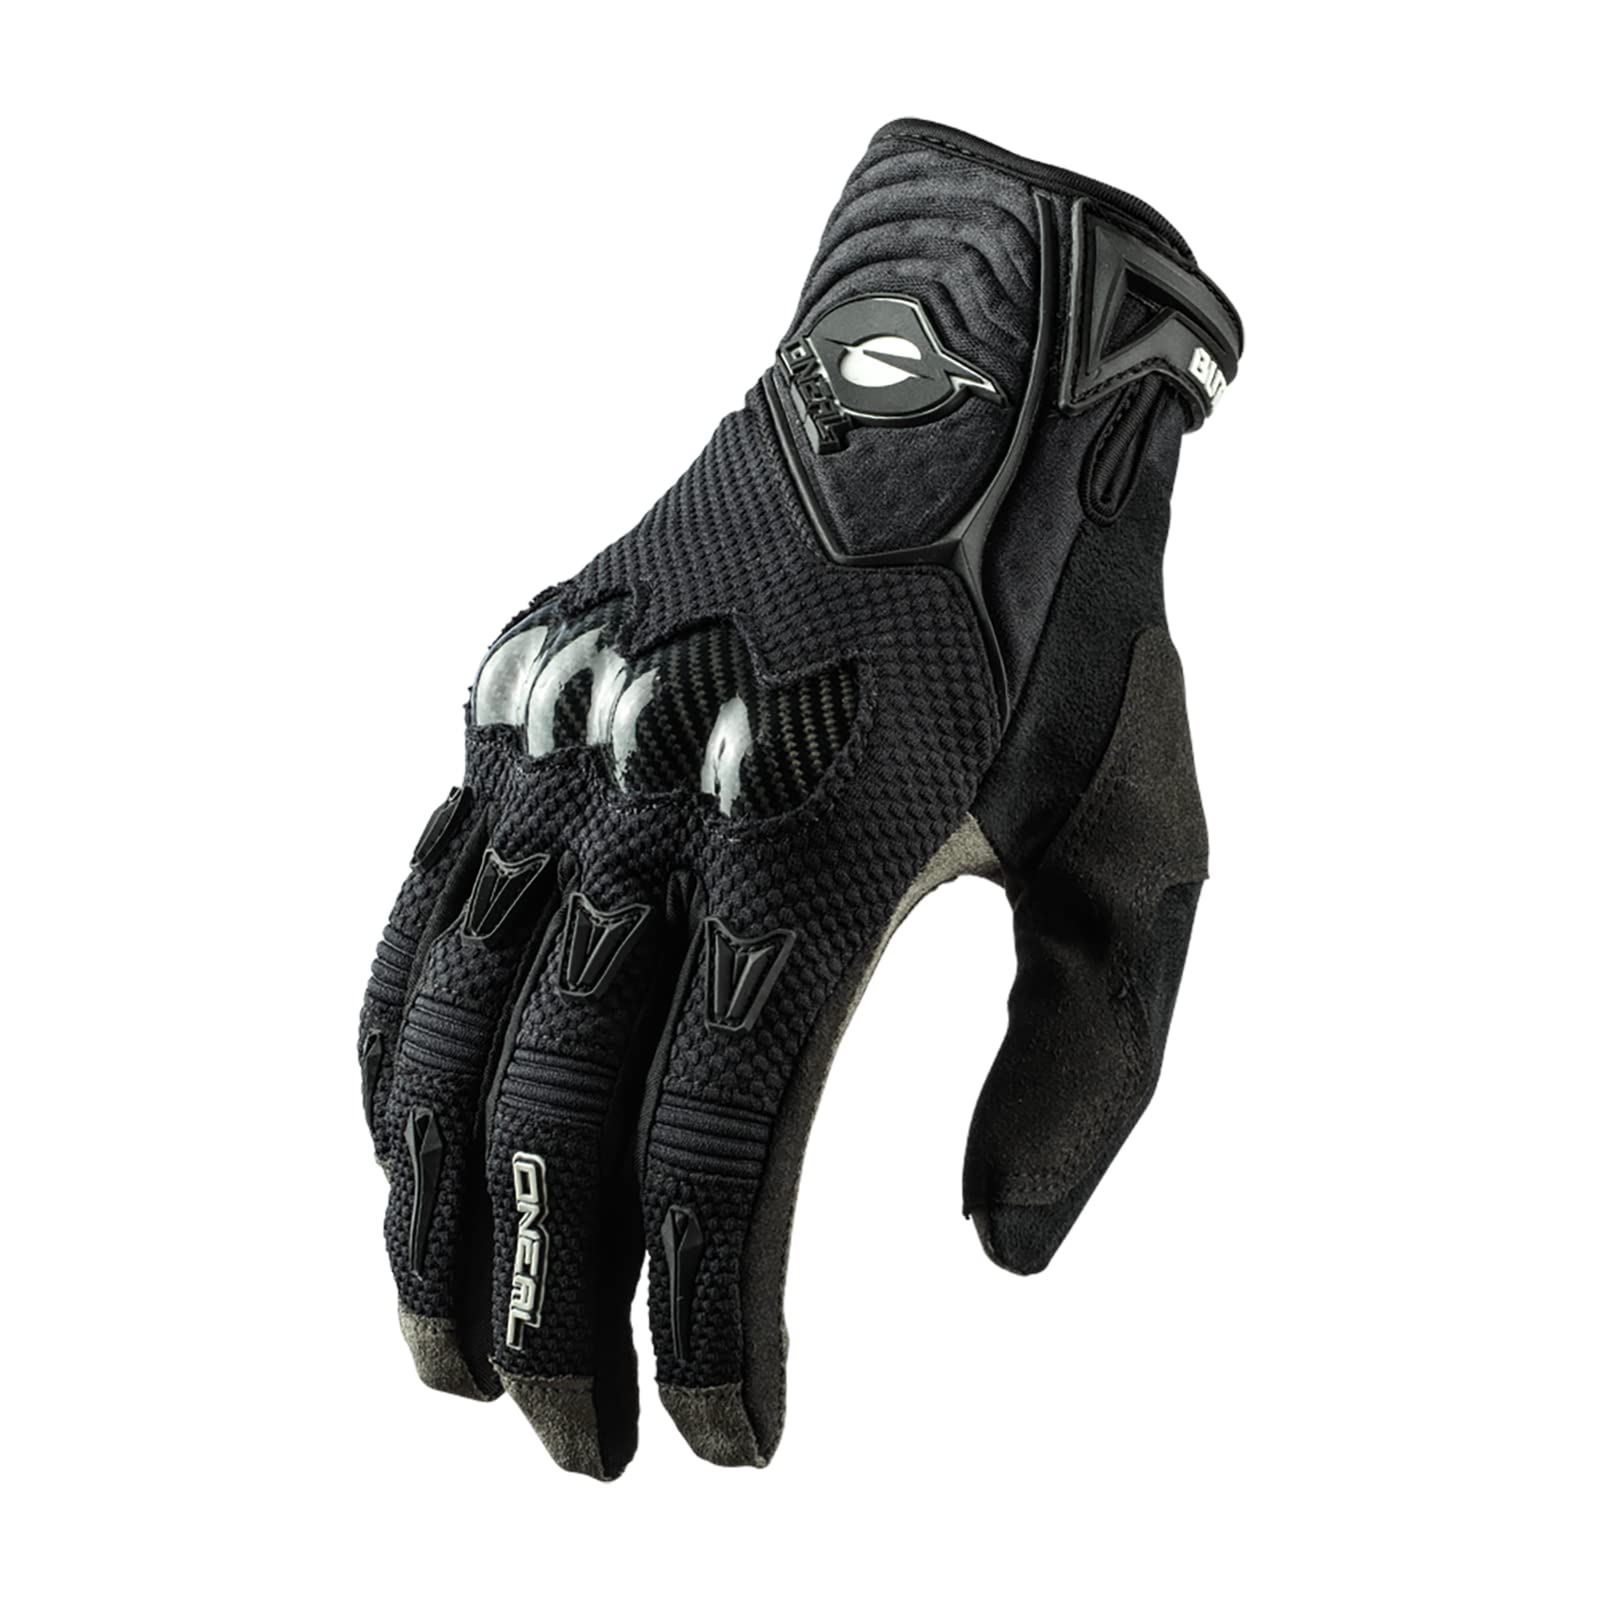 O'NEAL | Fahrrad- & Motocross-Handschuhe | MX MTB DH FR Downhill Freeride | 4-Wege-Stretch, Karbon-Knöchelschutz, Silikonbeschichtet | Butch Carbon Glove | Erwachsene | Schwarz | Größe M von O'NEAL